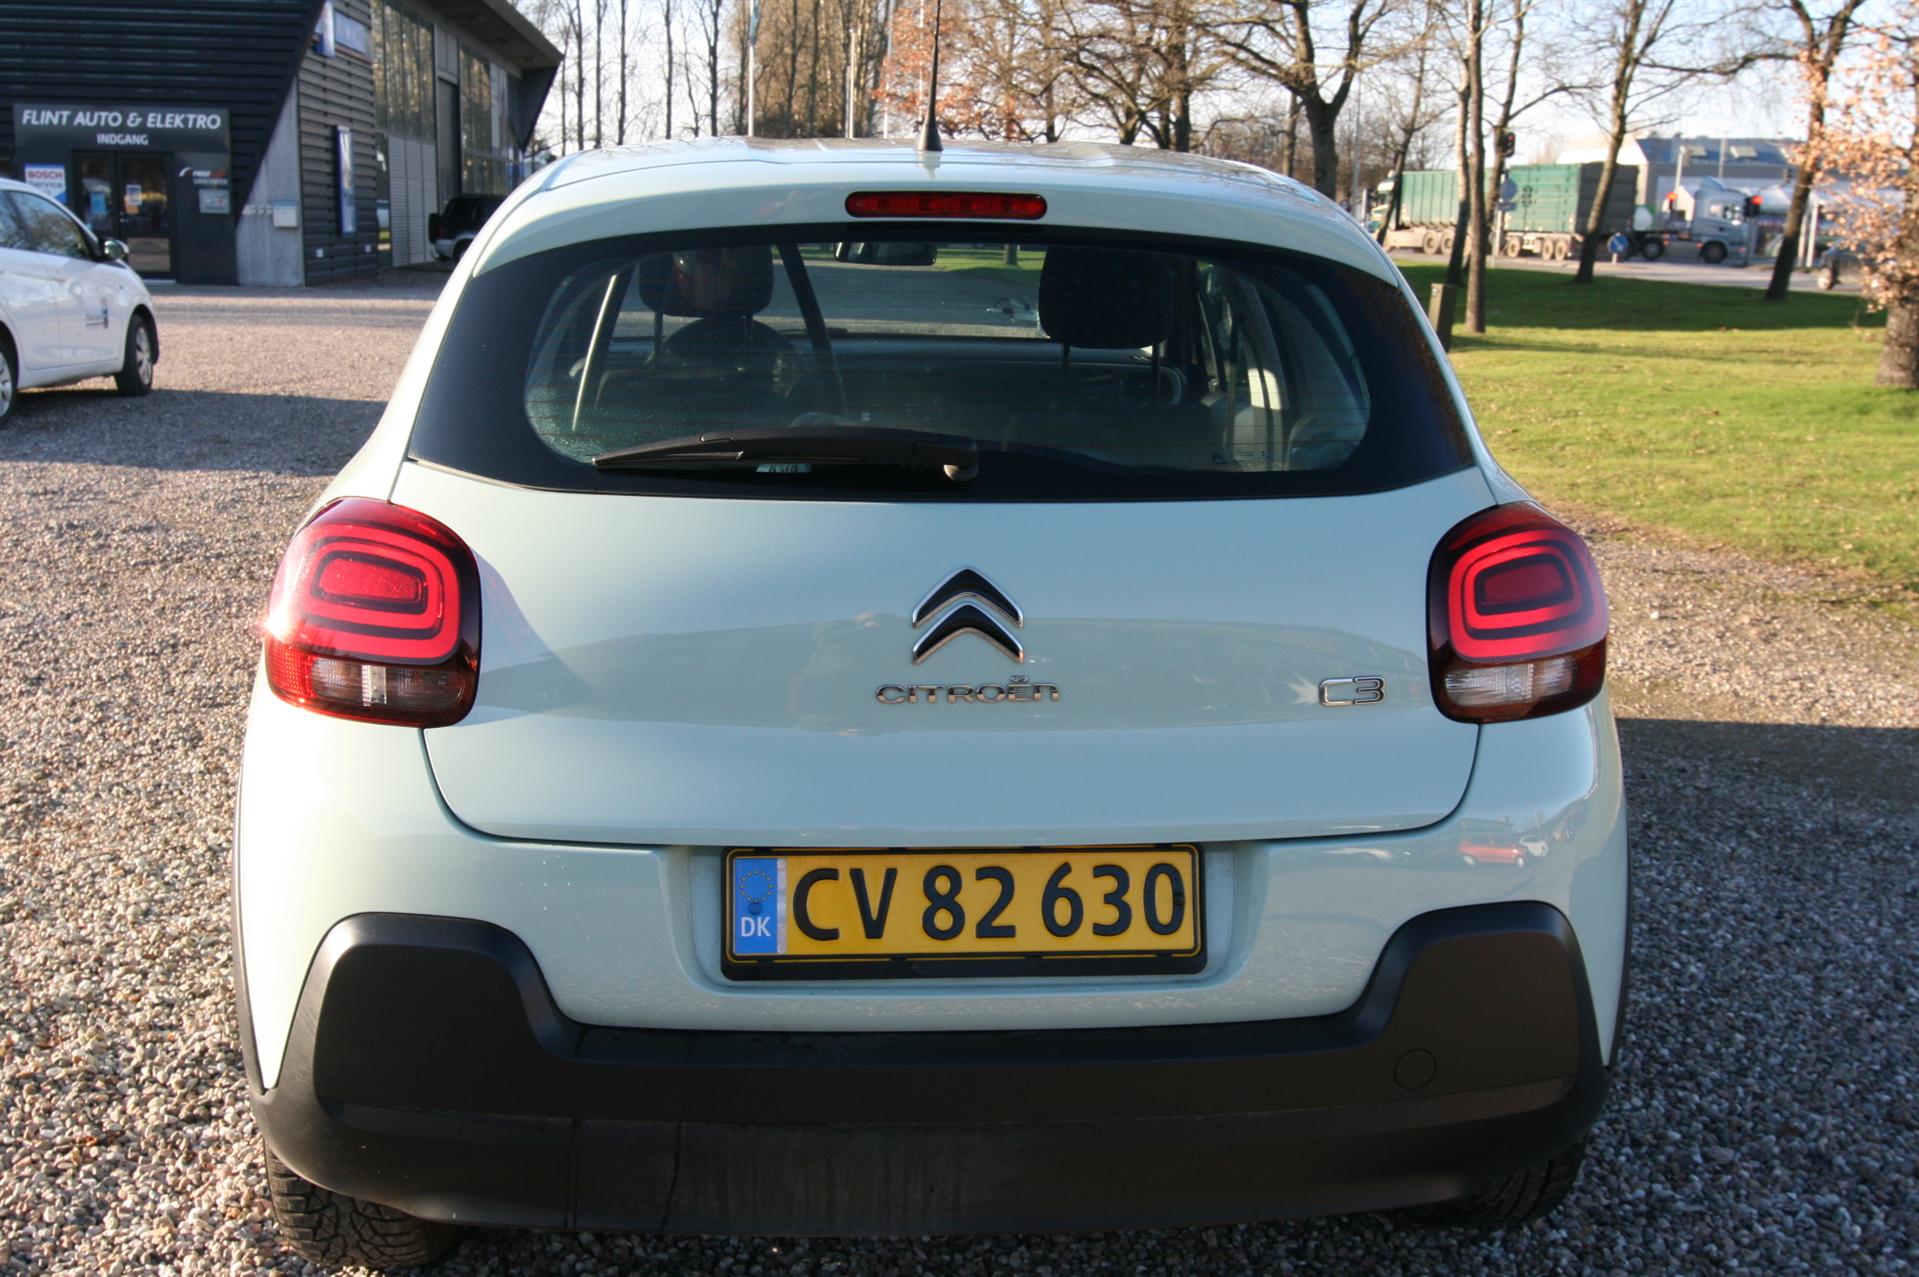 Billede af Citroën C3 1,2 PureTech Cool start/stop 82HK 5d